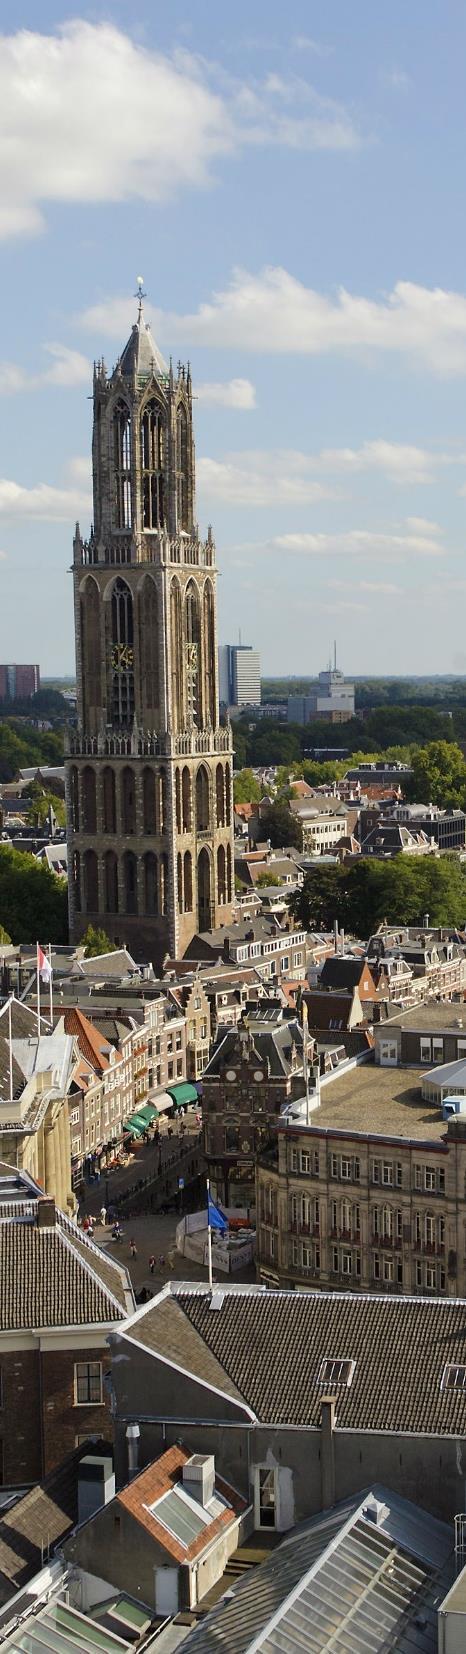 Onder meer de Dom van Utrecht en de Jaarbeurs Utrecht trekken het hele jaar door vele (inter)nationale bezoekers. Ook staat Utrecht bekend als prominente winkelstad.